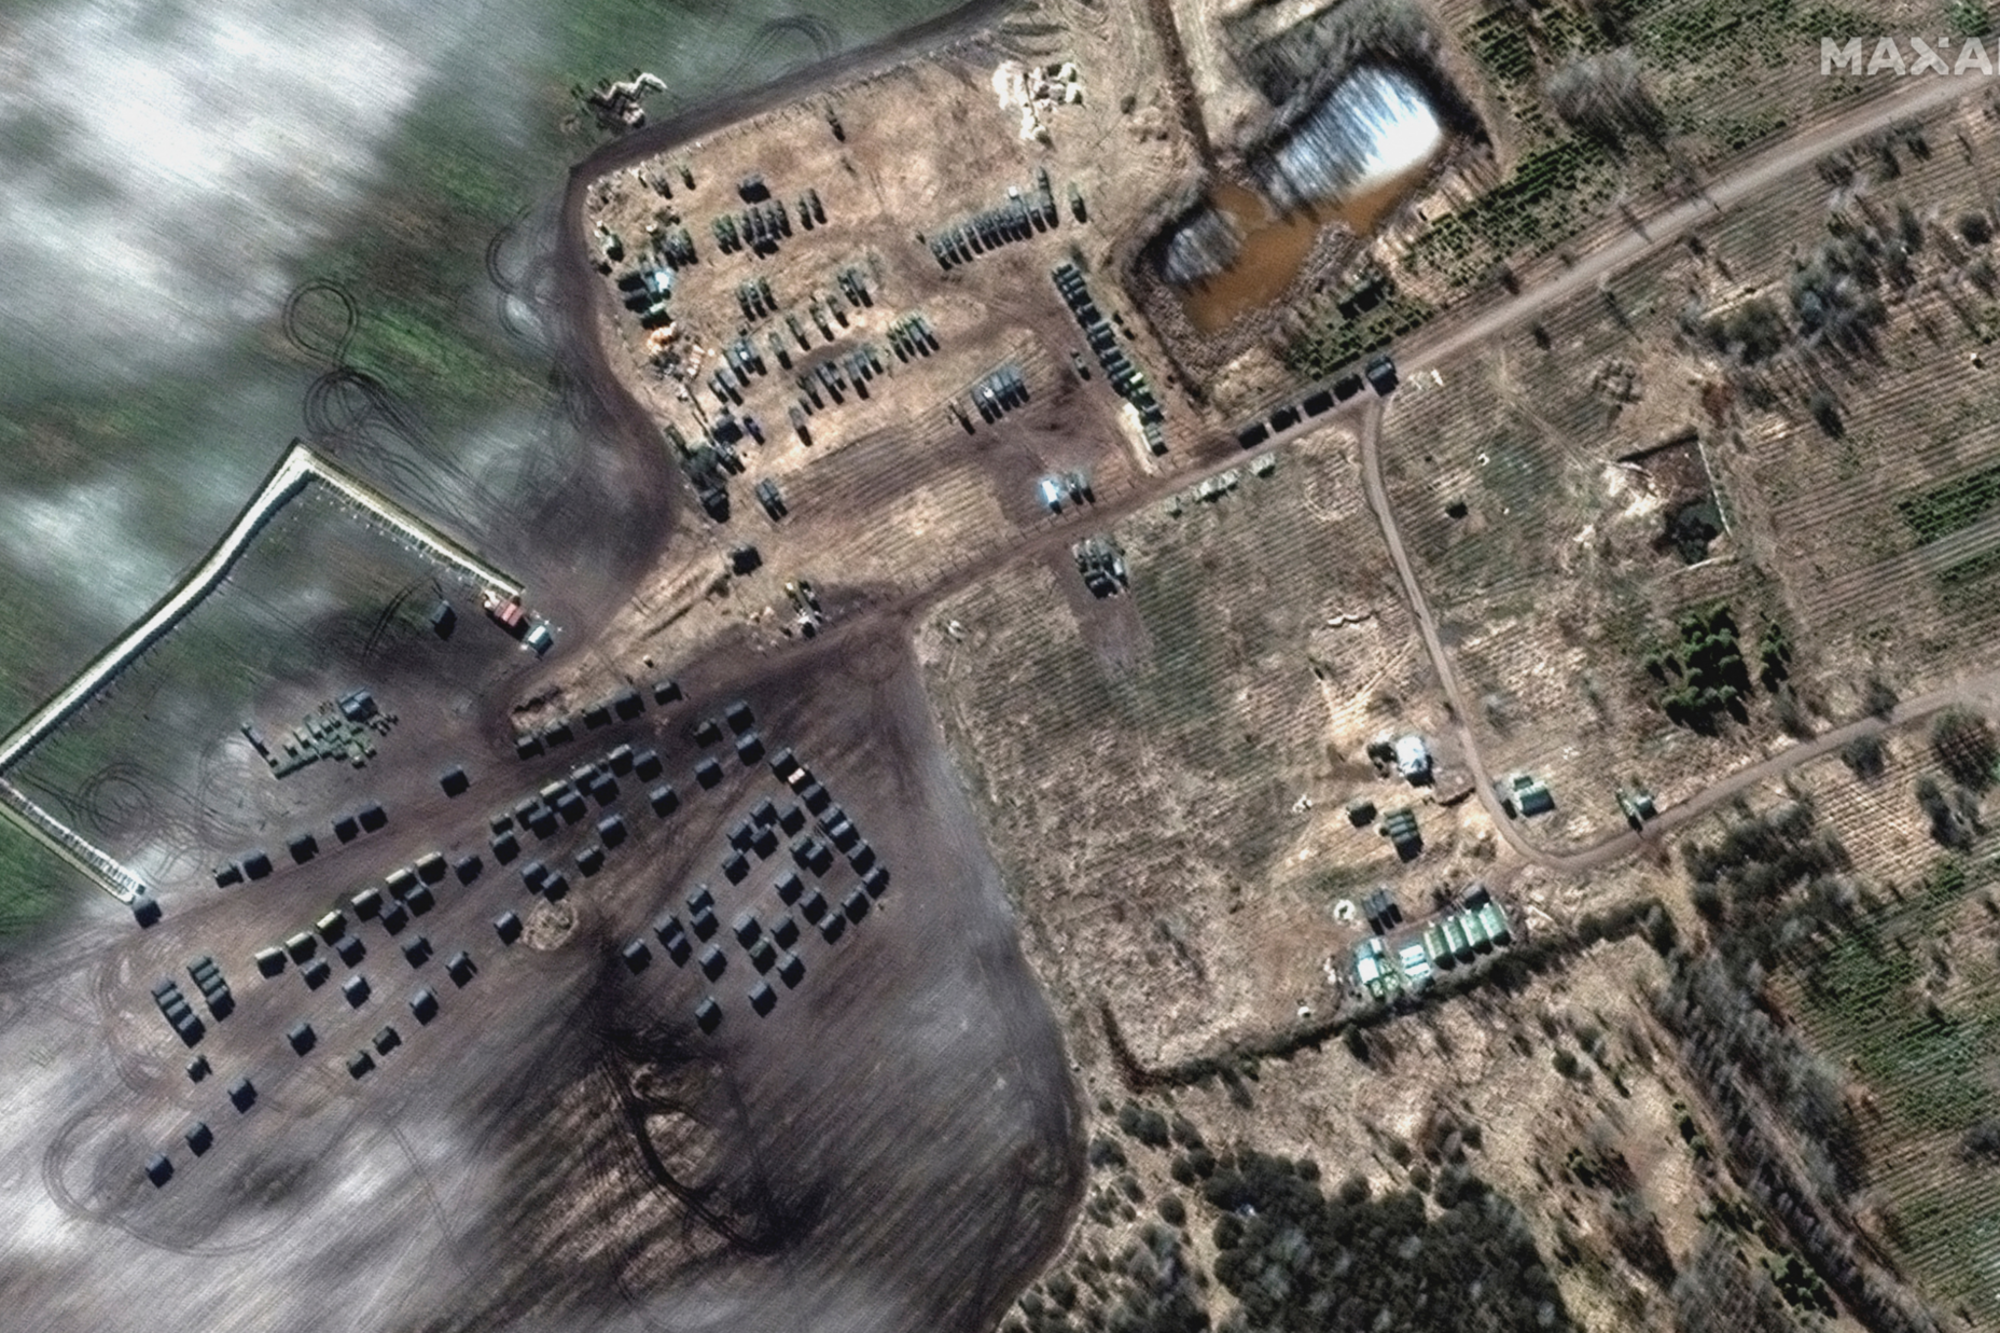 Satellietbeelden van Maxar, Russische troepen aan de Witrussische grens te Khilchikha